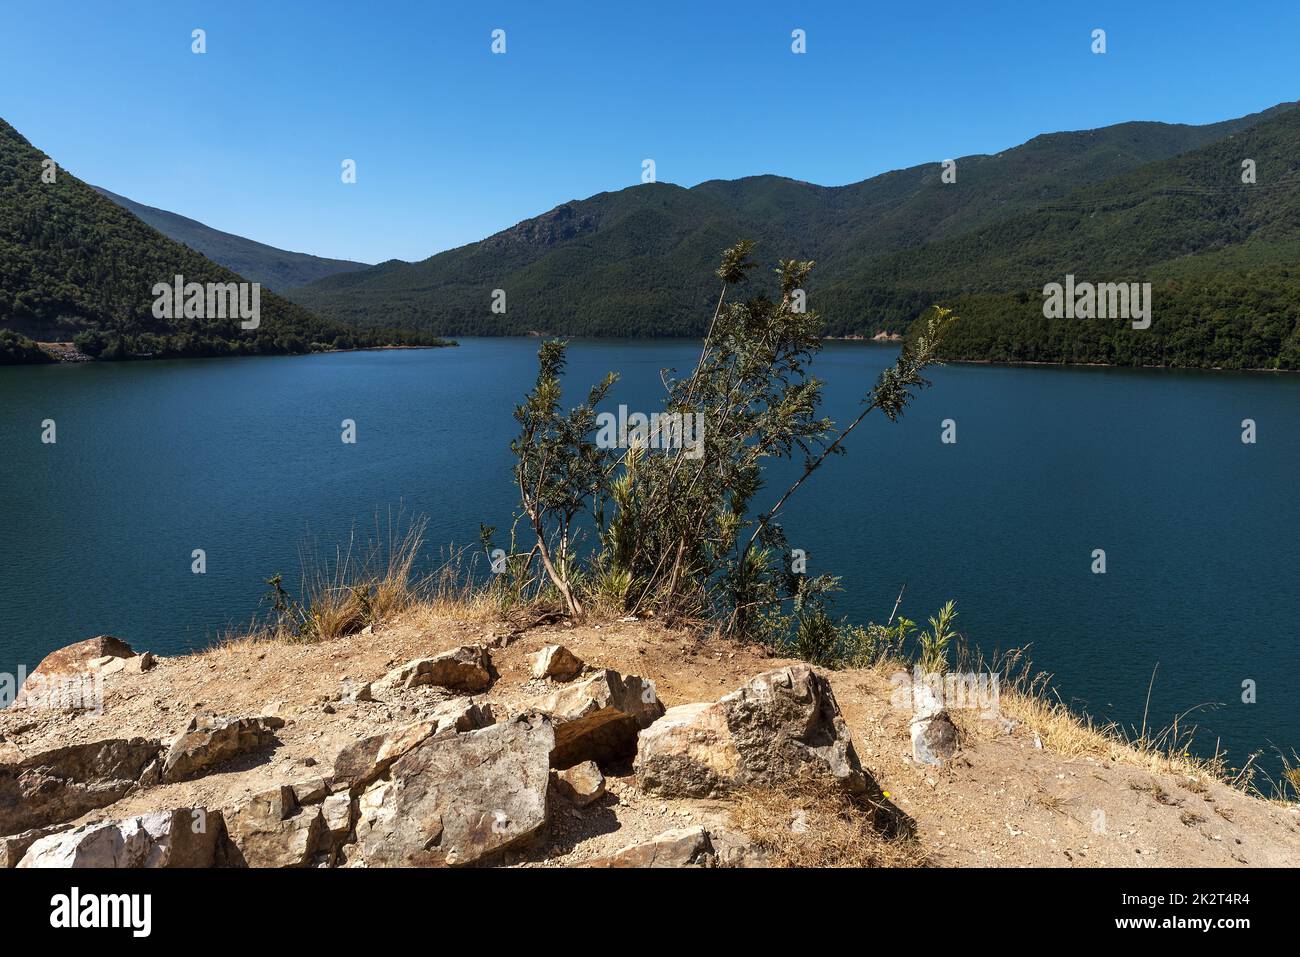 Forest landscape at the Biobio River, Chile Stock Photo